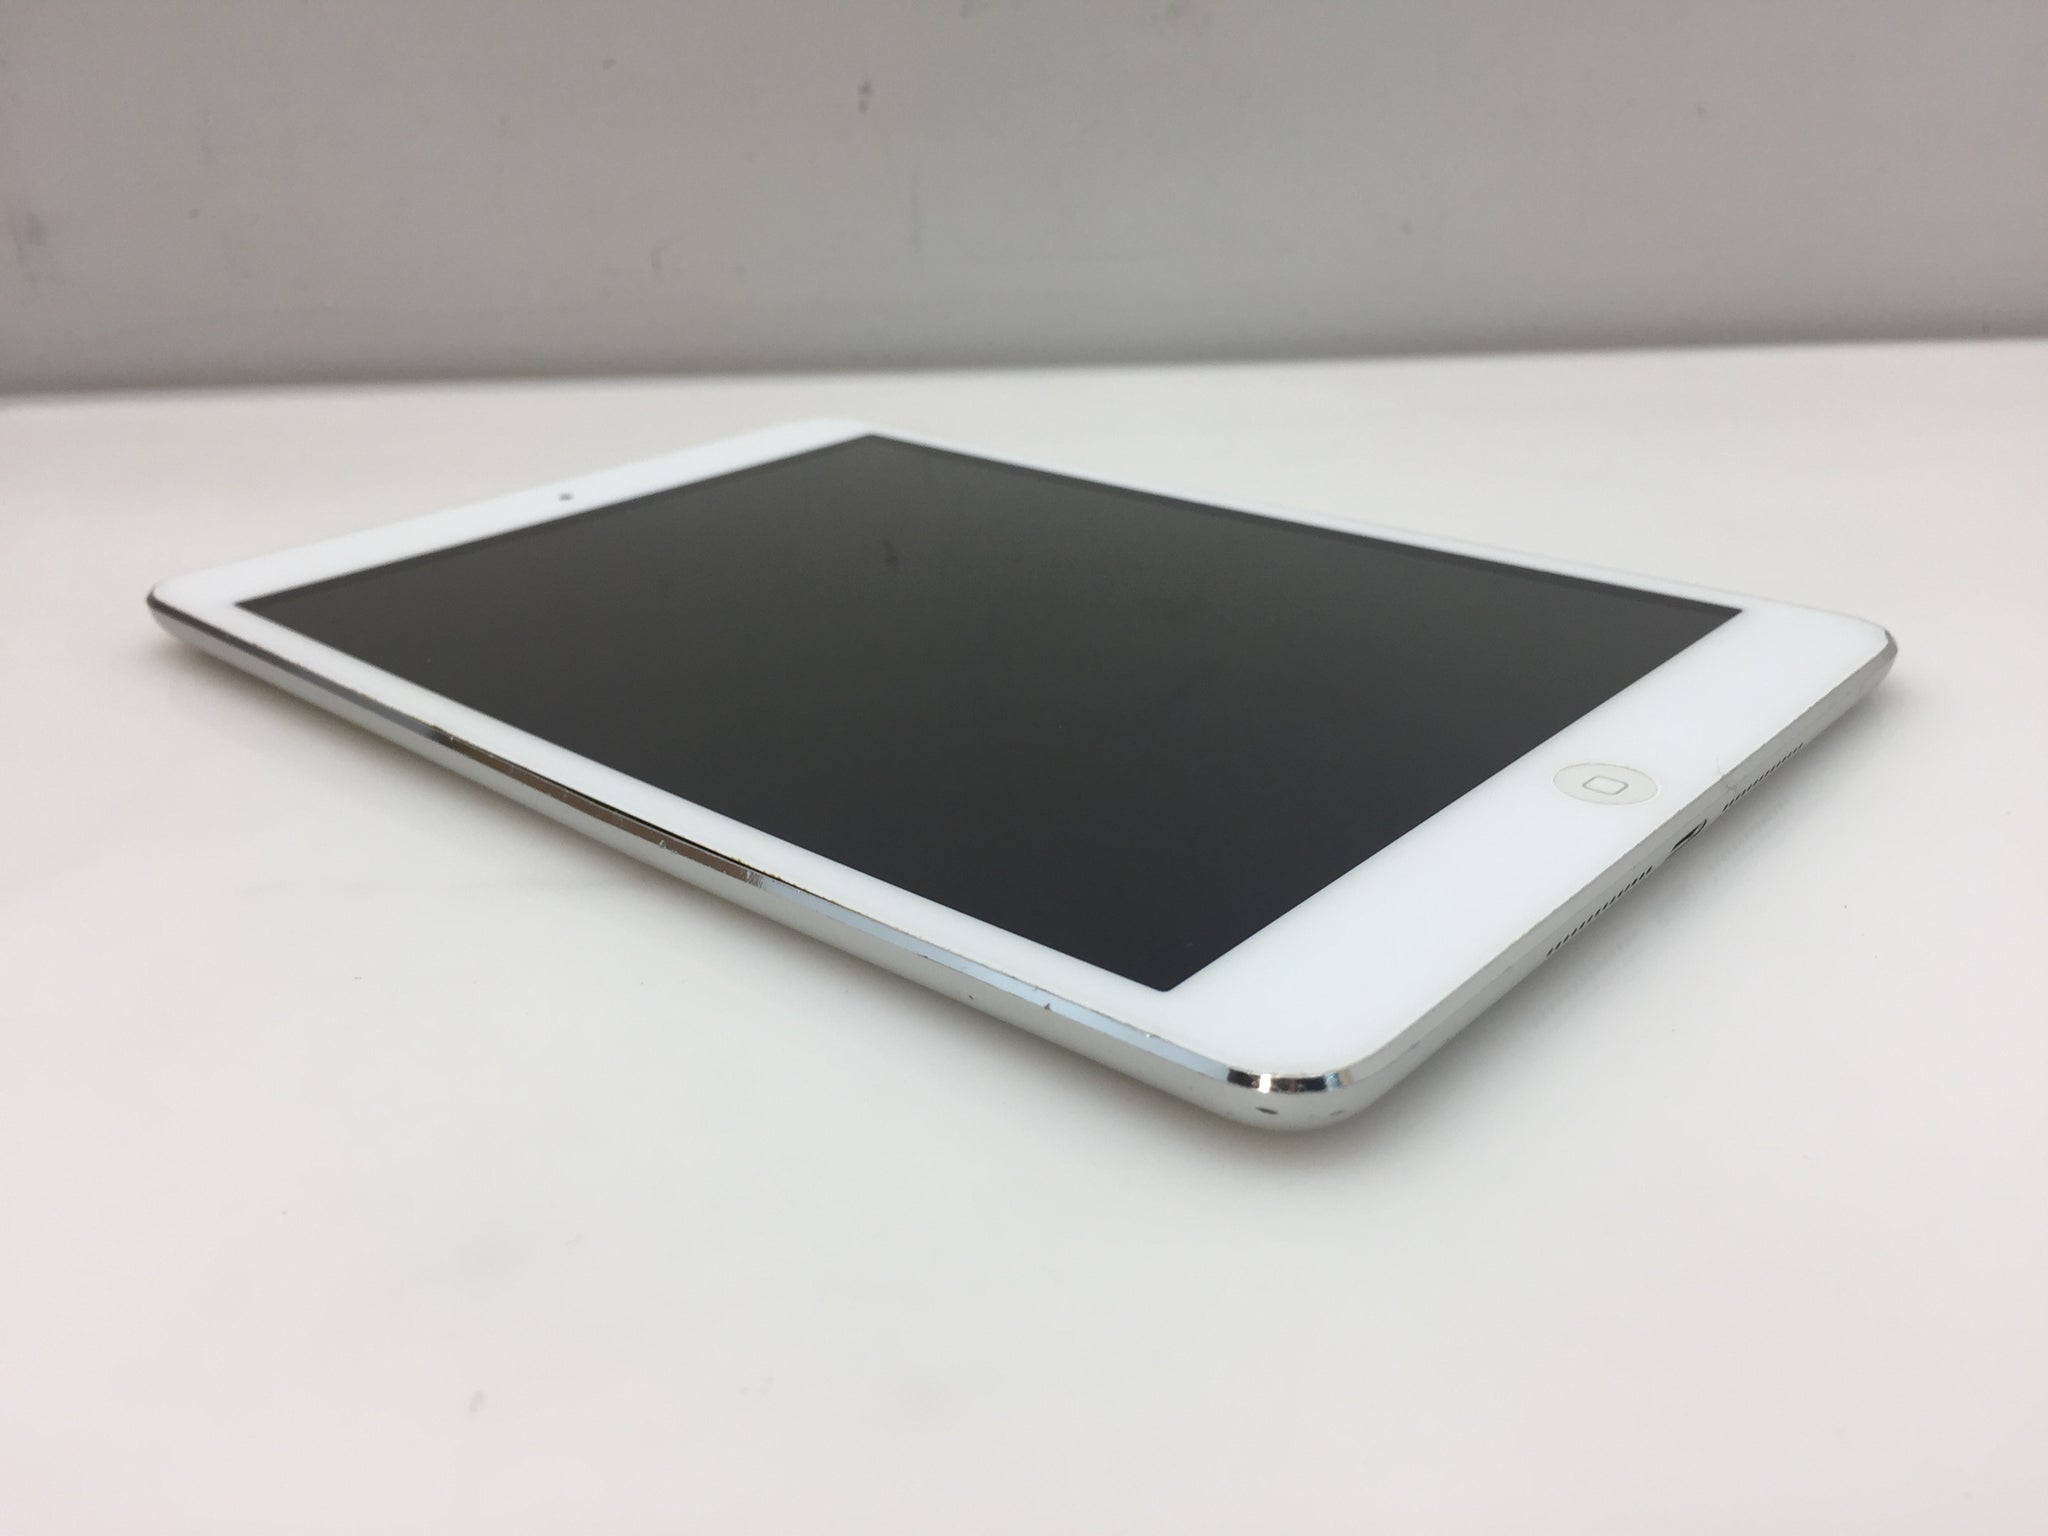 Apple iPad mini 1st Generation. MD531LL/A 16GB Wi-Fi 7.9